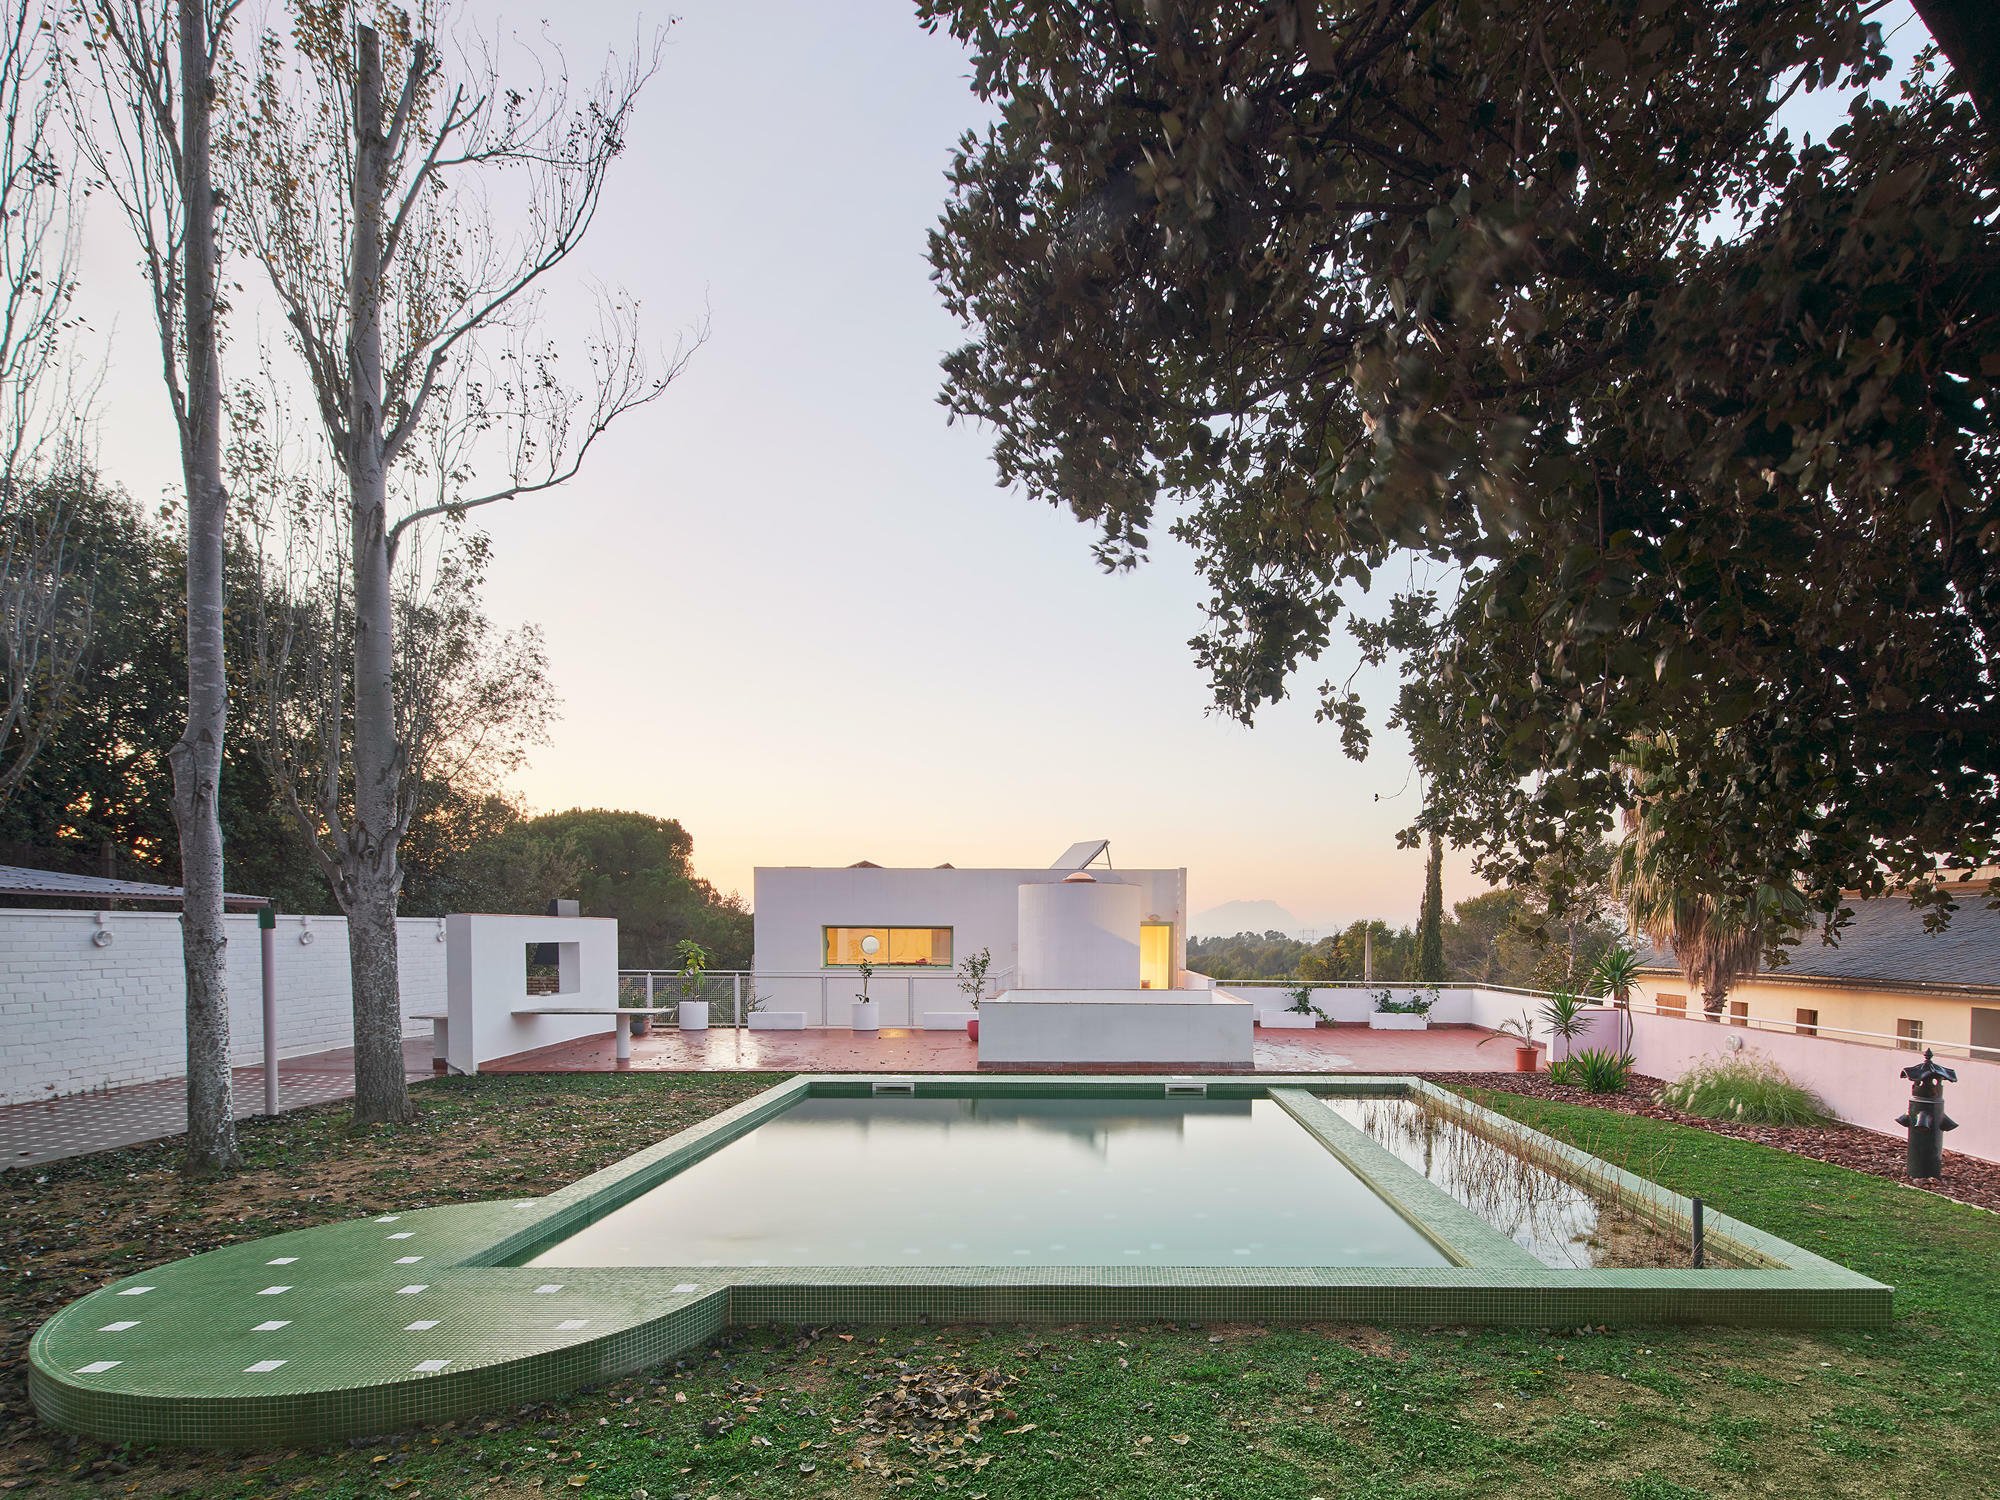 Das Wohnhaus in La Floresta aus dem Jahr 1988 wurde von Antoni Roselló entworfen und nach Plänen von Cierto Estudio umgestaltet – neu ist der Pool.